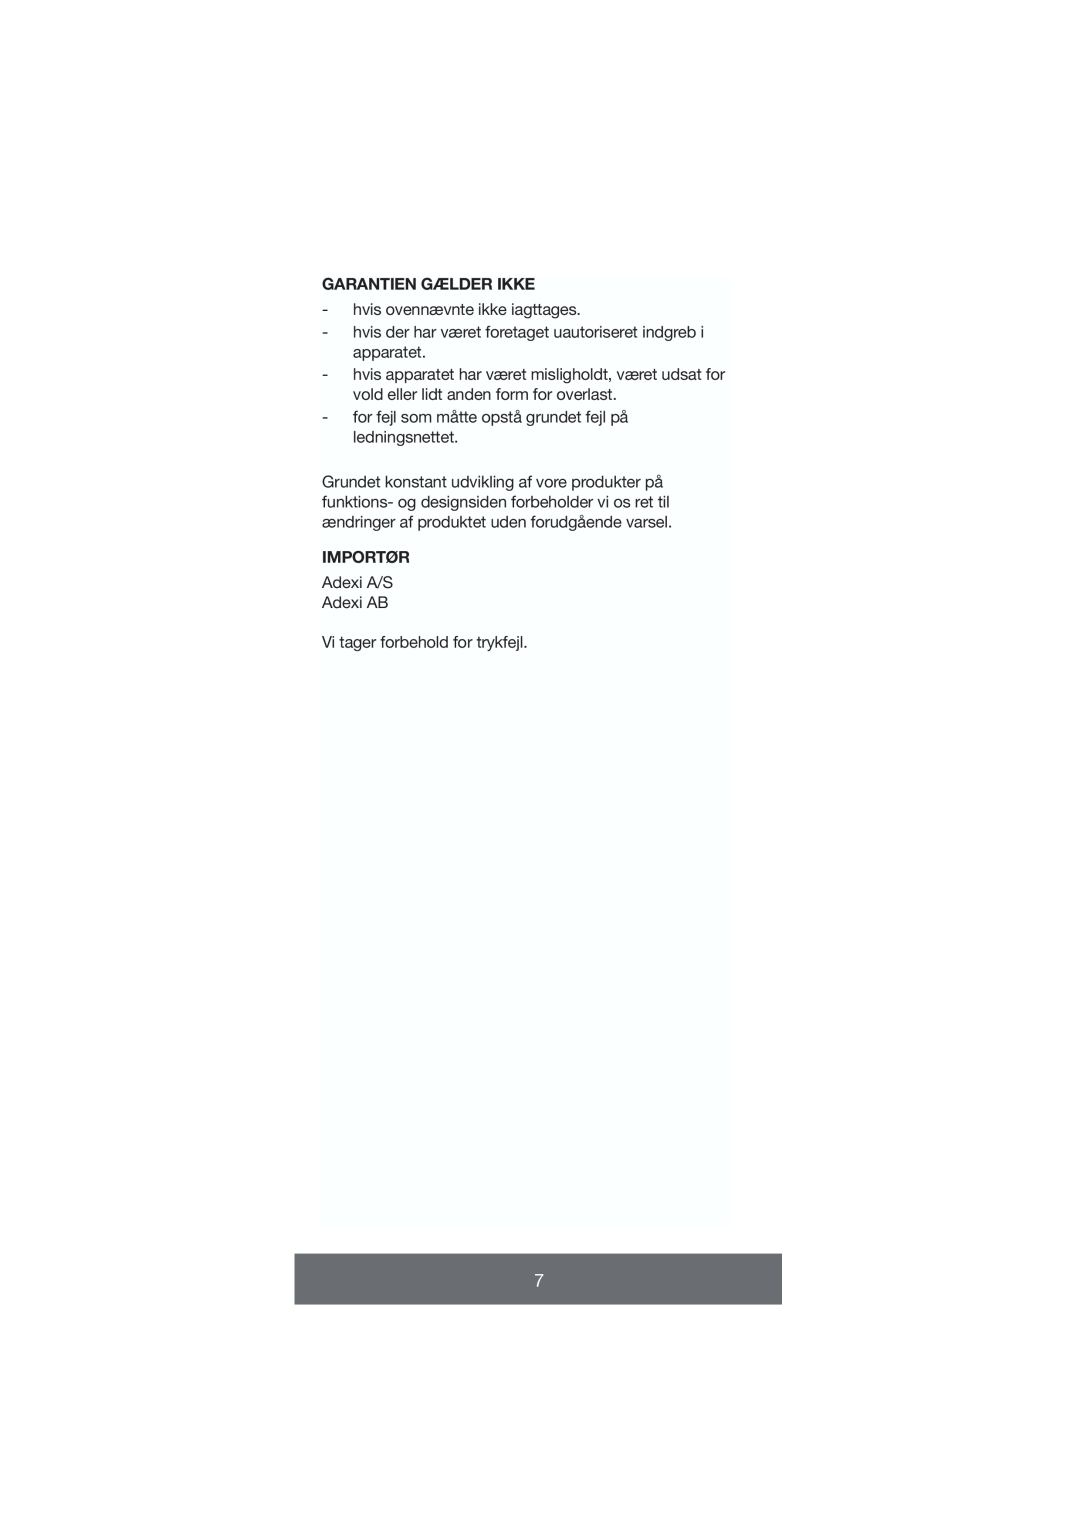 Melissa 646-035 manual Garantien Gælder Ikke, Importør 